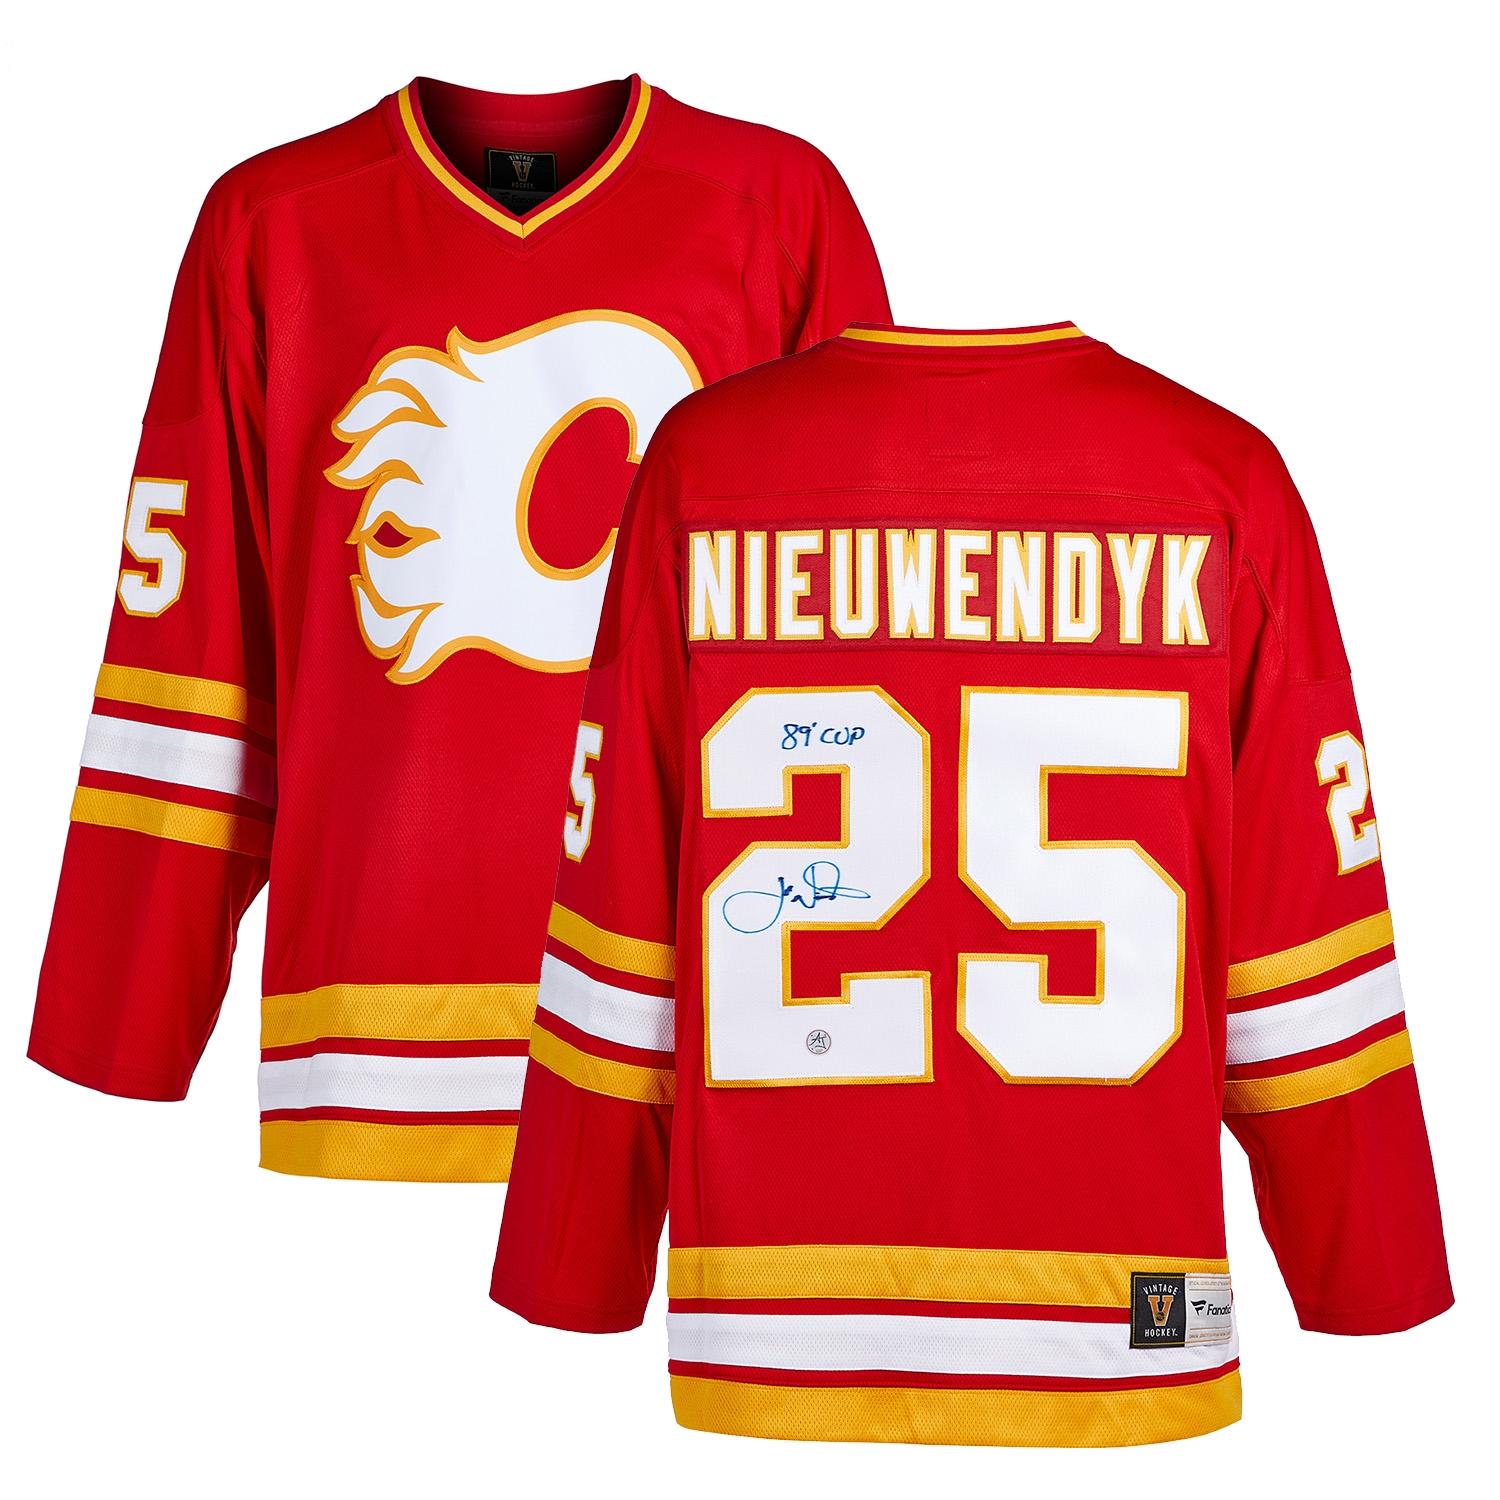 Joe Nieuwendyk Calgary Flames Signed Retro Fanatics Jersey